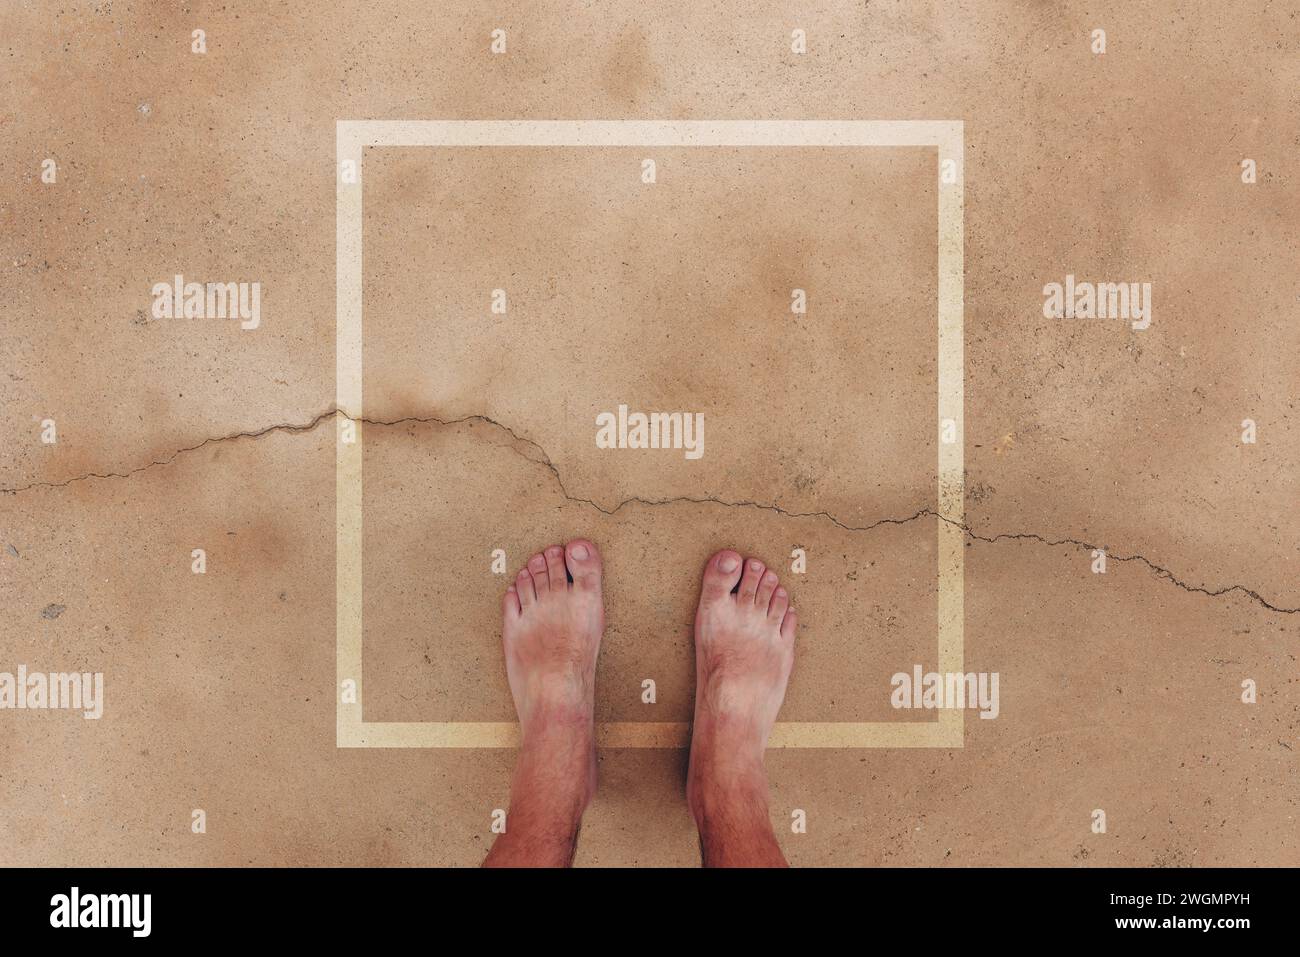 Maschio a piedi nudi in piedi su una superficie di cemento bagnato con telaio quadrato come spazio di copia, immagine pov con vista dall'alto Foto Stock